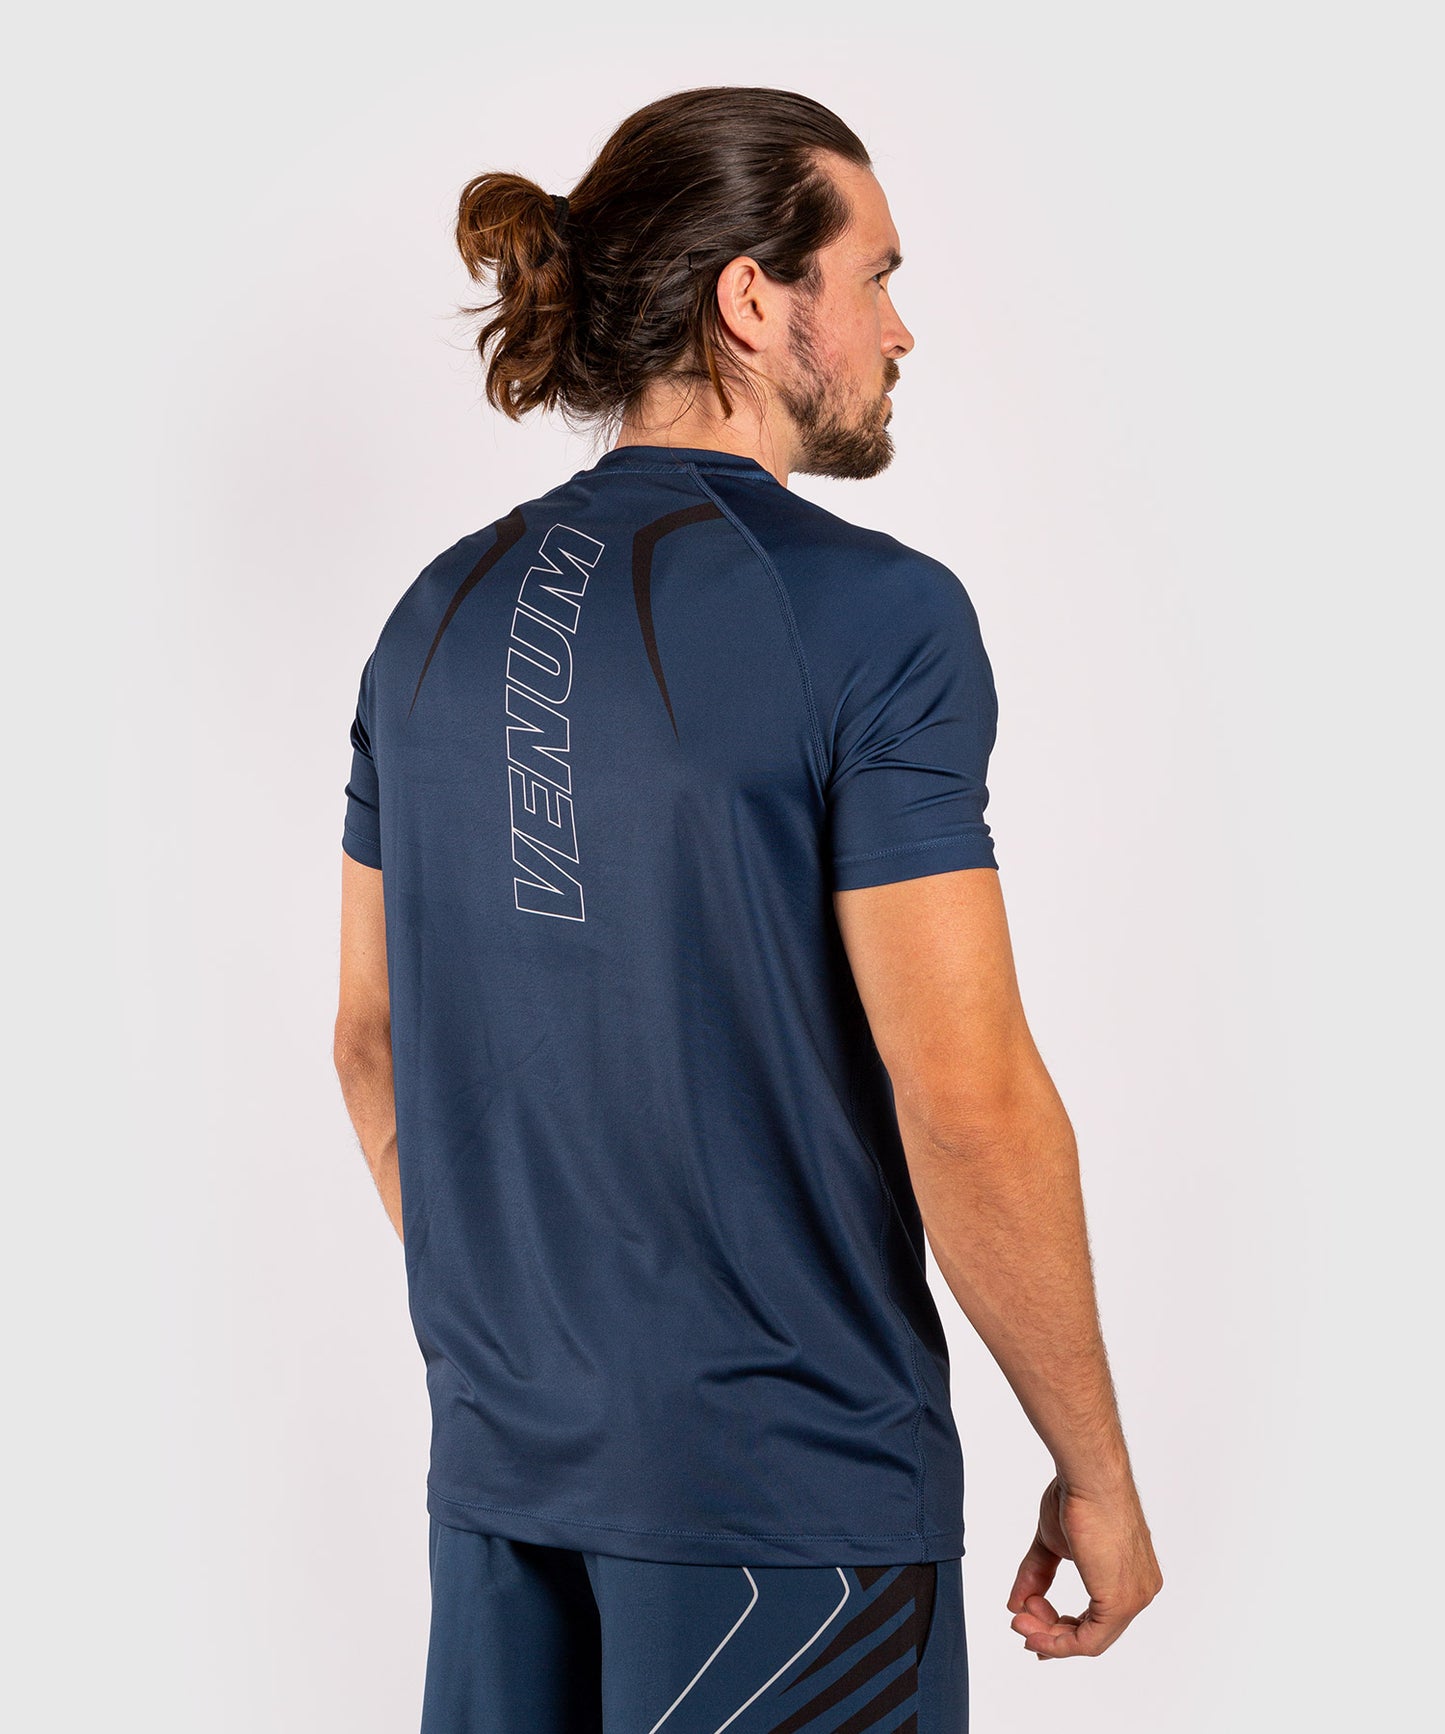 Camiseta Dry-Tech Venum Contender 5.0 - marino/arena